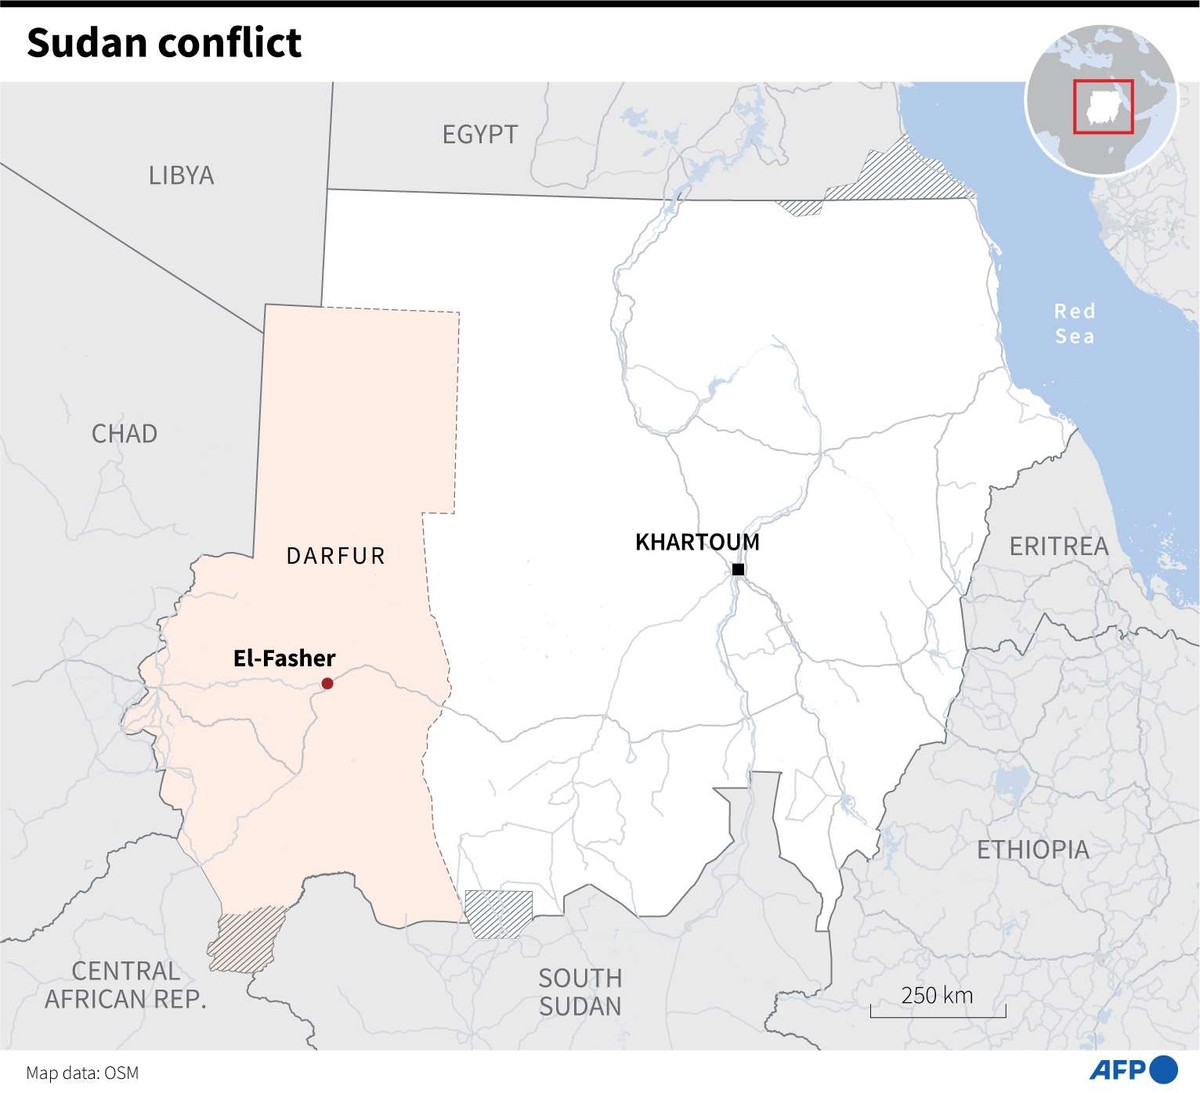 الجوع يزيد من أزمة اللاجئين السودانيين في المناطق الحدودية